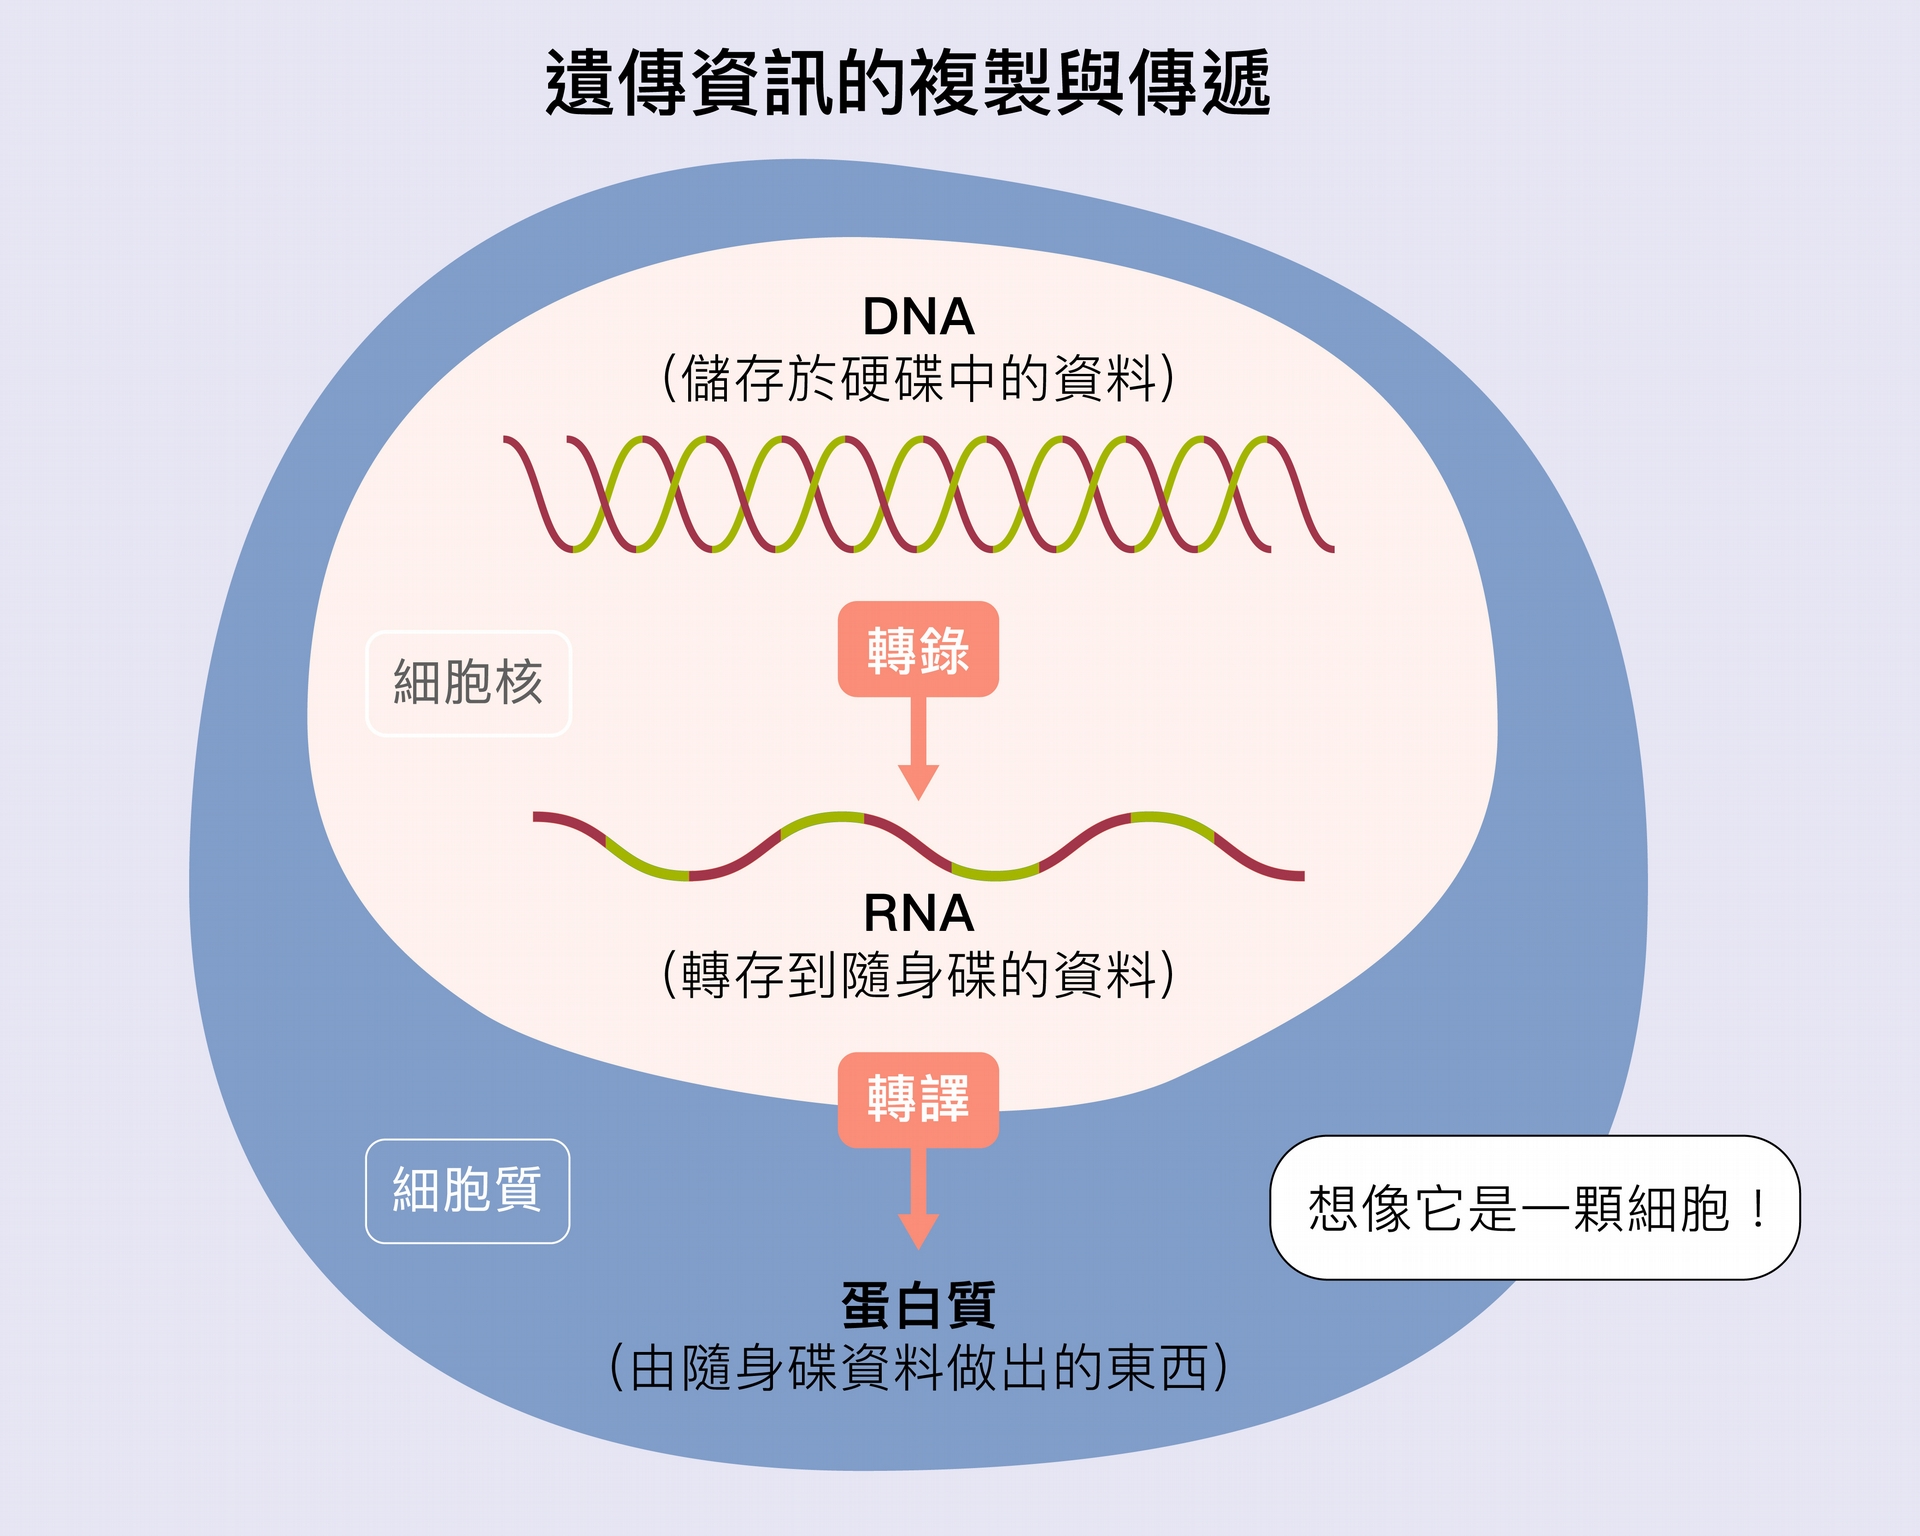 生物所有基因的資訊全部是在 DNA 上，好比身上的「硬碟」。細胞要使用這些資料時，必須把細胞核裡的 DNA 的資訊，轉錄成為 RNA—-好比用「隨身碟」把硬碟資料拷貝出來。接下來，RNA「隨身碟」的資訊進入細胞質，進行轉譯，製造各種蛋白質，好比把隨身碟內的資料列印成實體文件。 <br>資料來源│張典顯 <br>圖說設計│黃曉君、林洵安 